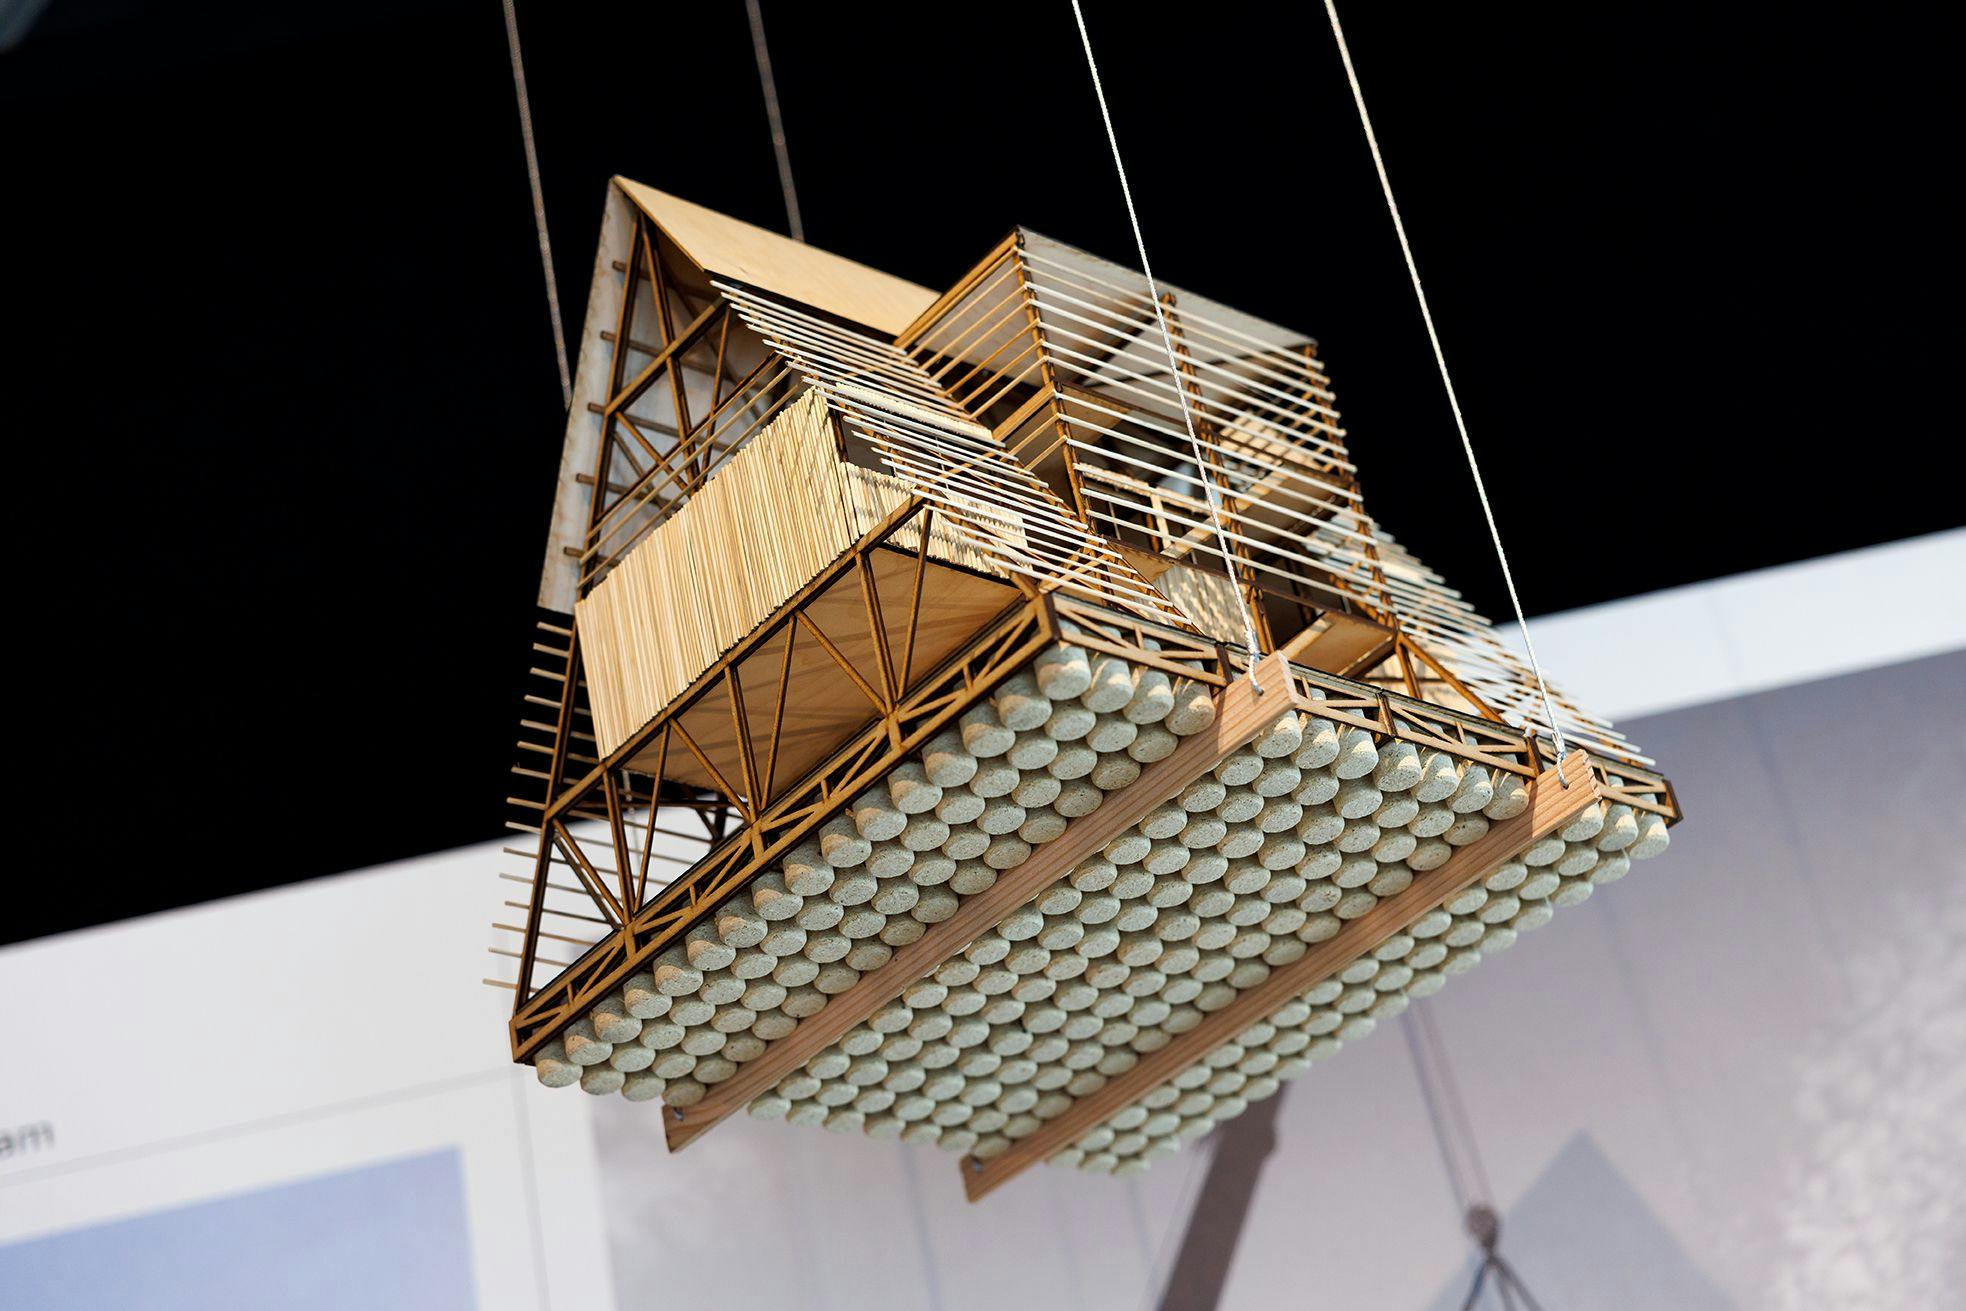 Een model van het drijvende paviljoen hangt aan draden in de tentoonstelling Waterstad.